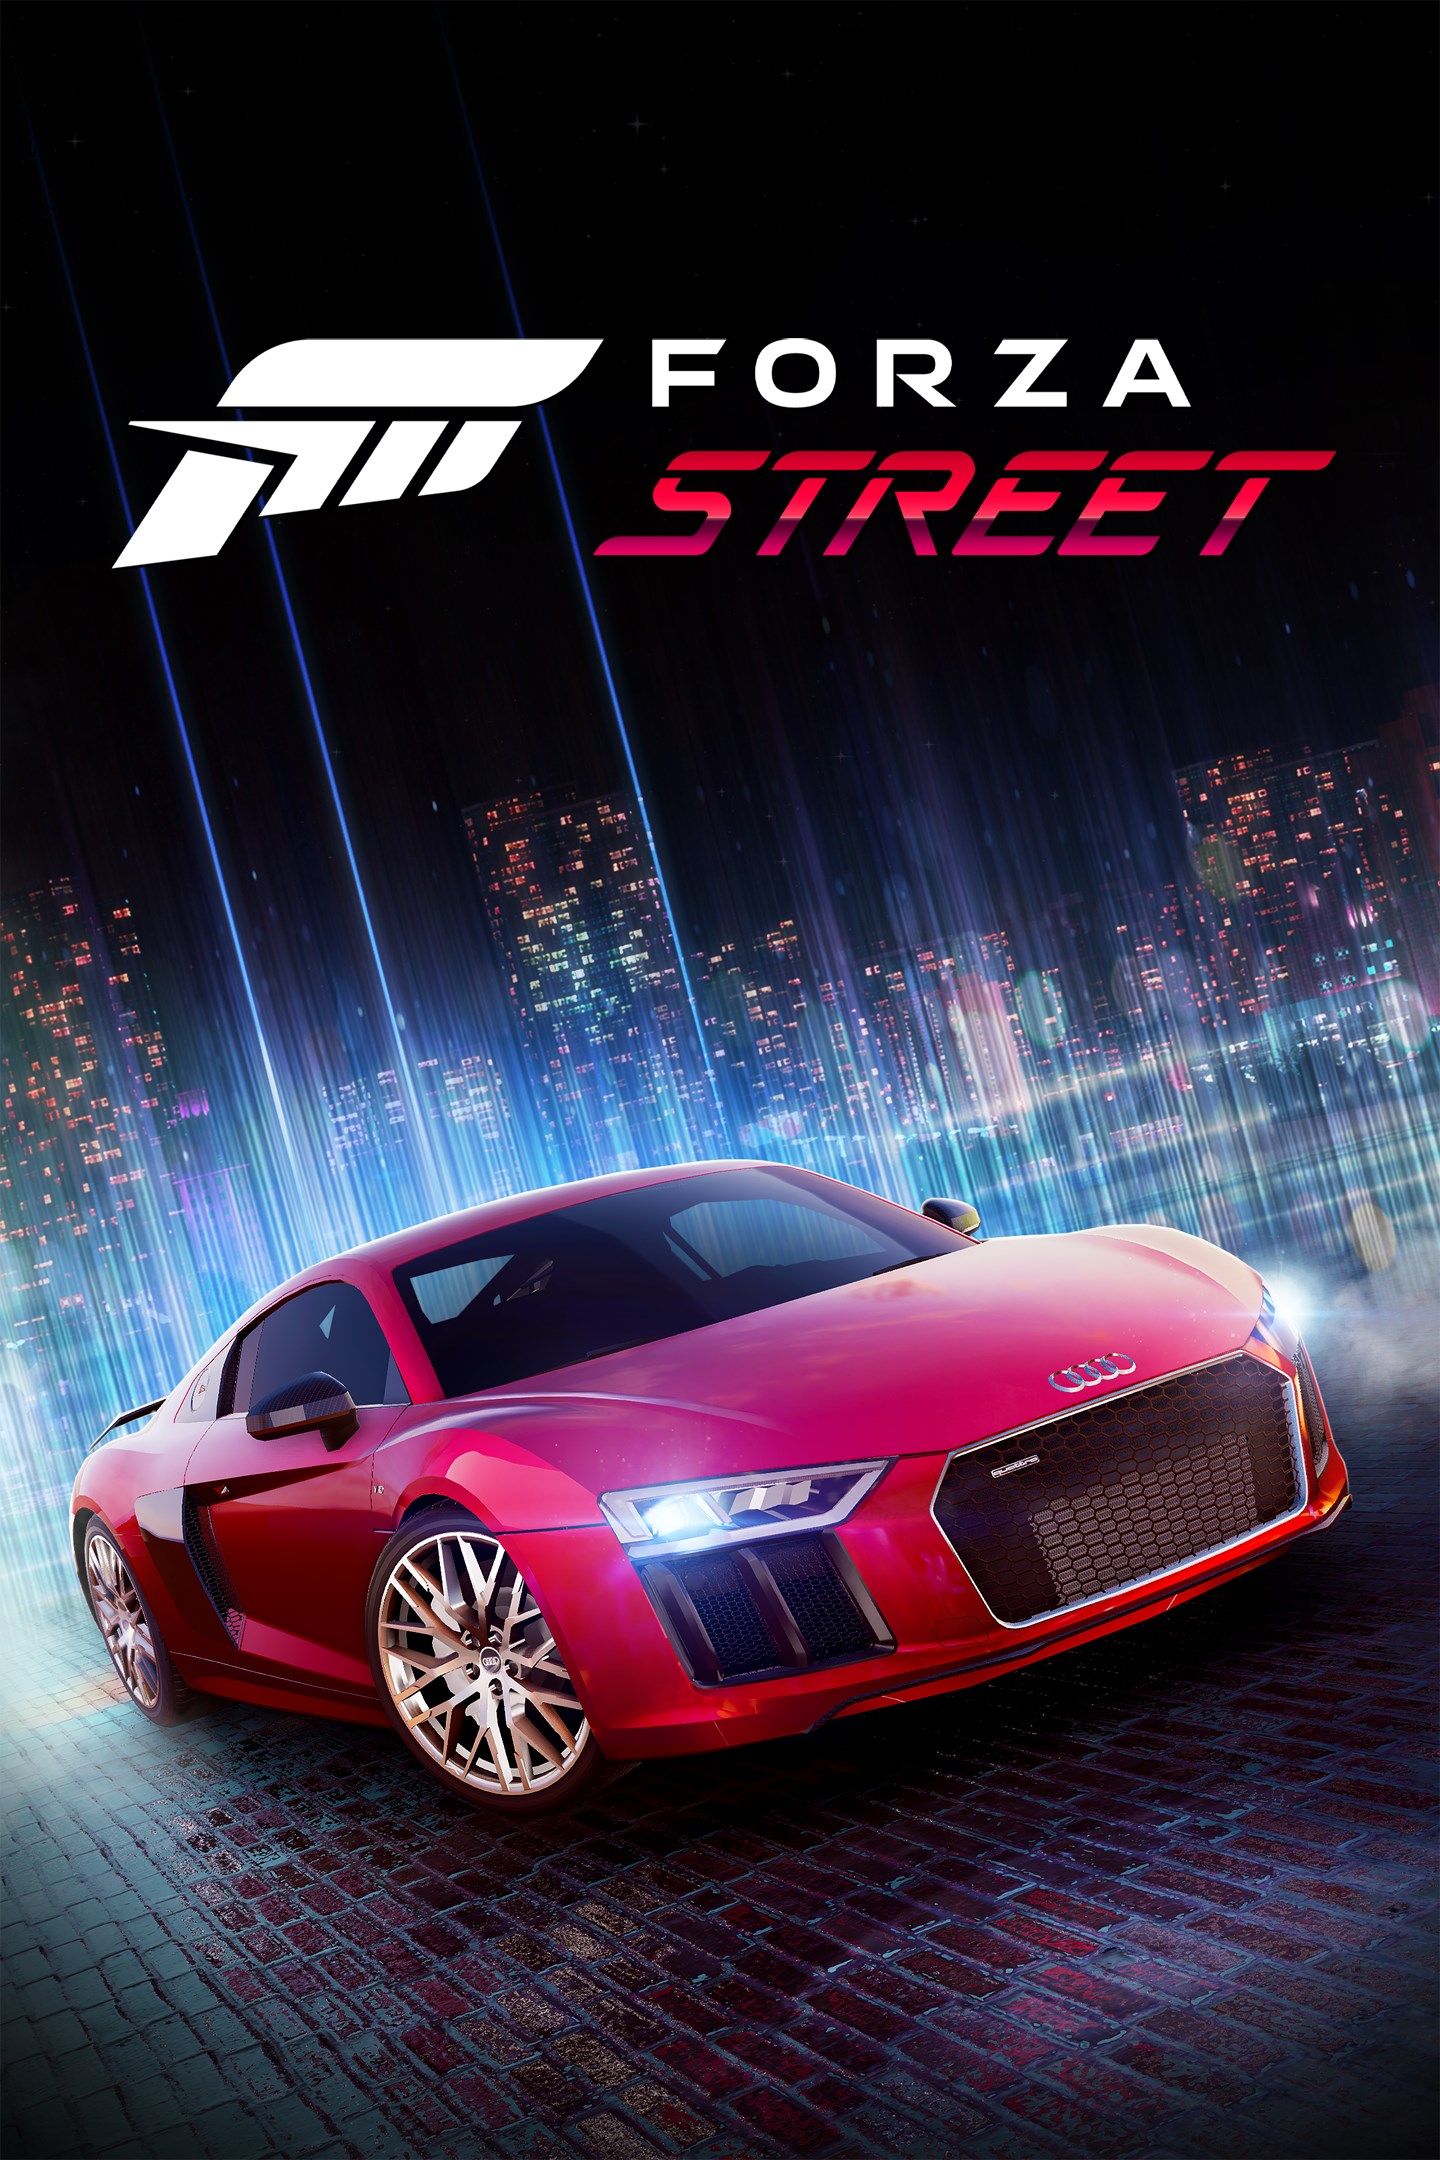 Forza Horizon 3/Cars, Forza Wiki